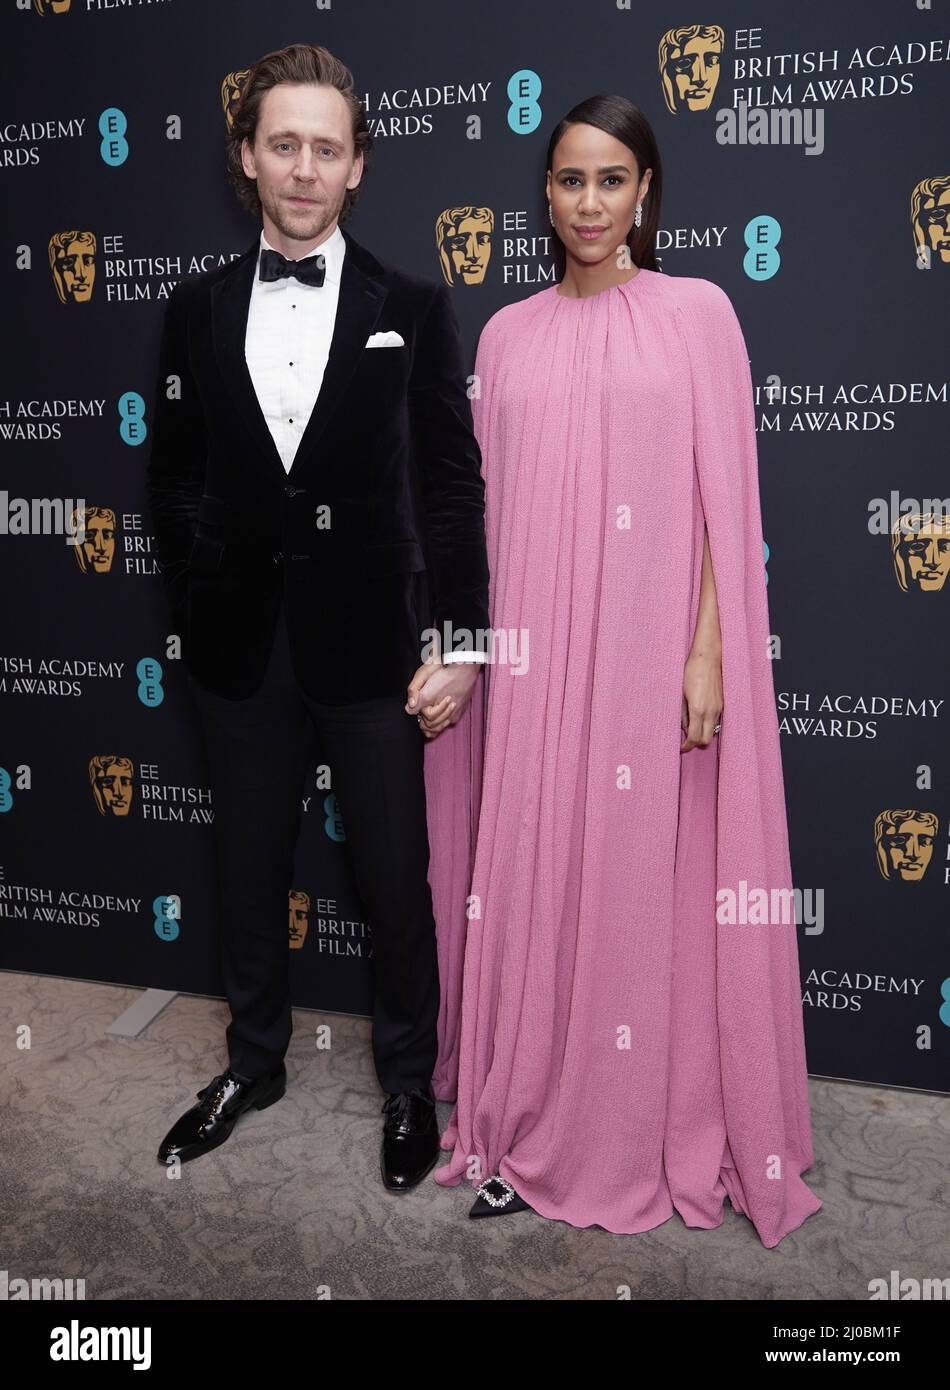 Tom Hiddleston und Zawe Ashton – mit einem großen Ring am Hochzeitsfinger – kamen beim Abendessen der British Academy Film Awards 75. im Grosvenor House Hotel in London an. Bilddatum: Sonntag, 13. März 2022. Stockfoto